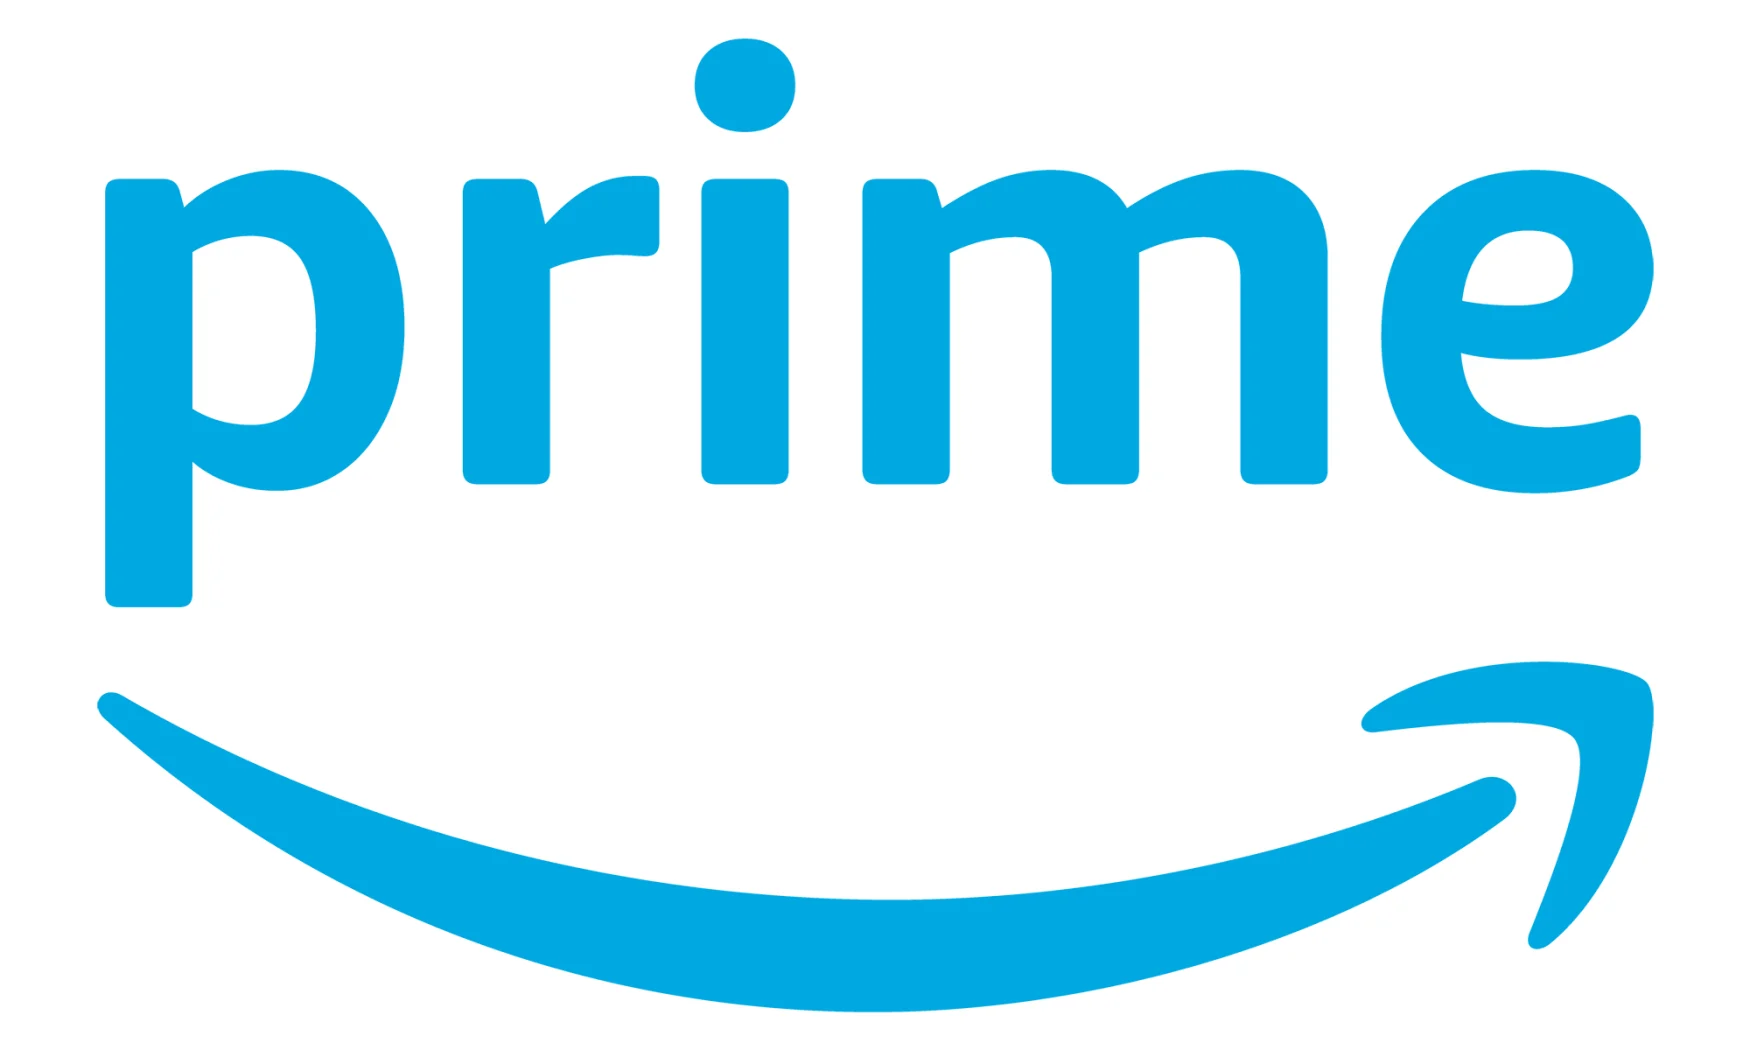 Blue Amazon Prime logo on a white background. 